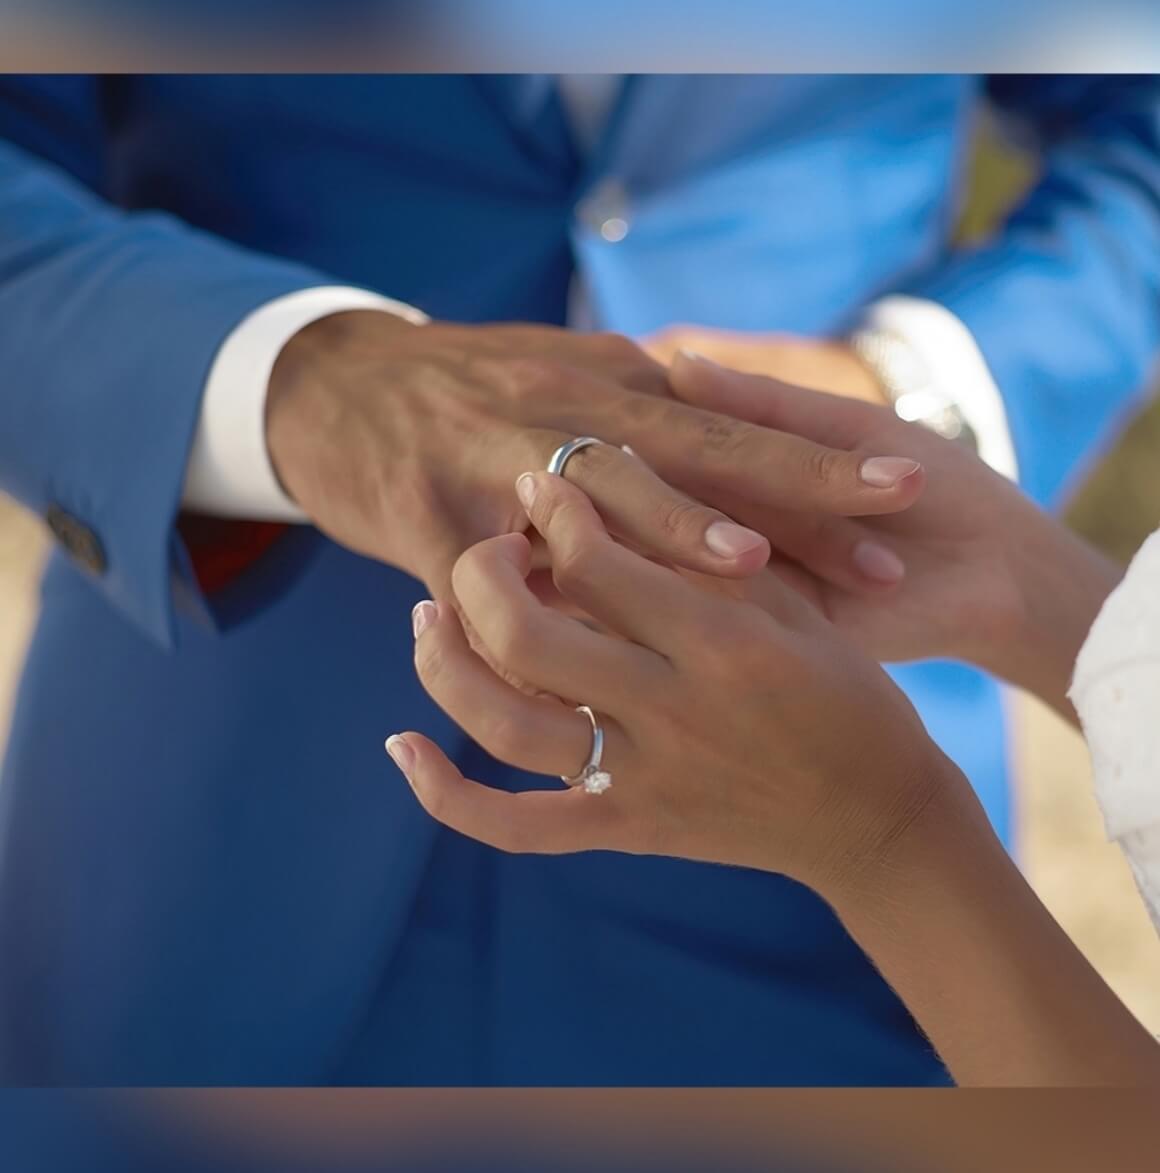 Супружество рк. Обручальное кольцо. Обручальные кольца на руках. Жених надевает кольцо. Свадьба руки с кольцами.